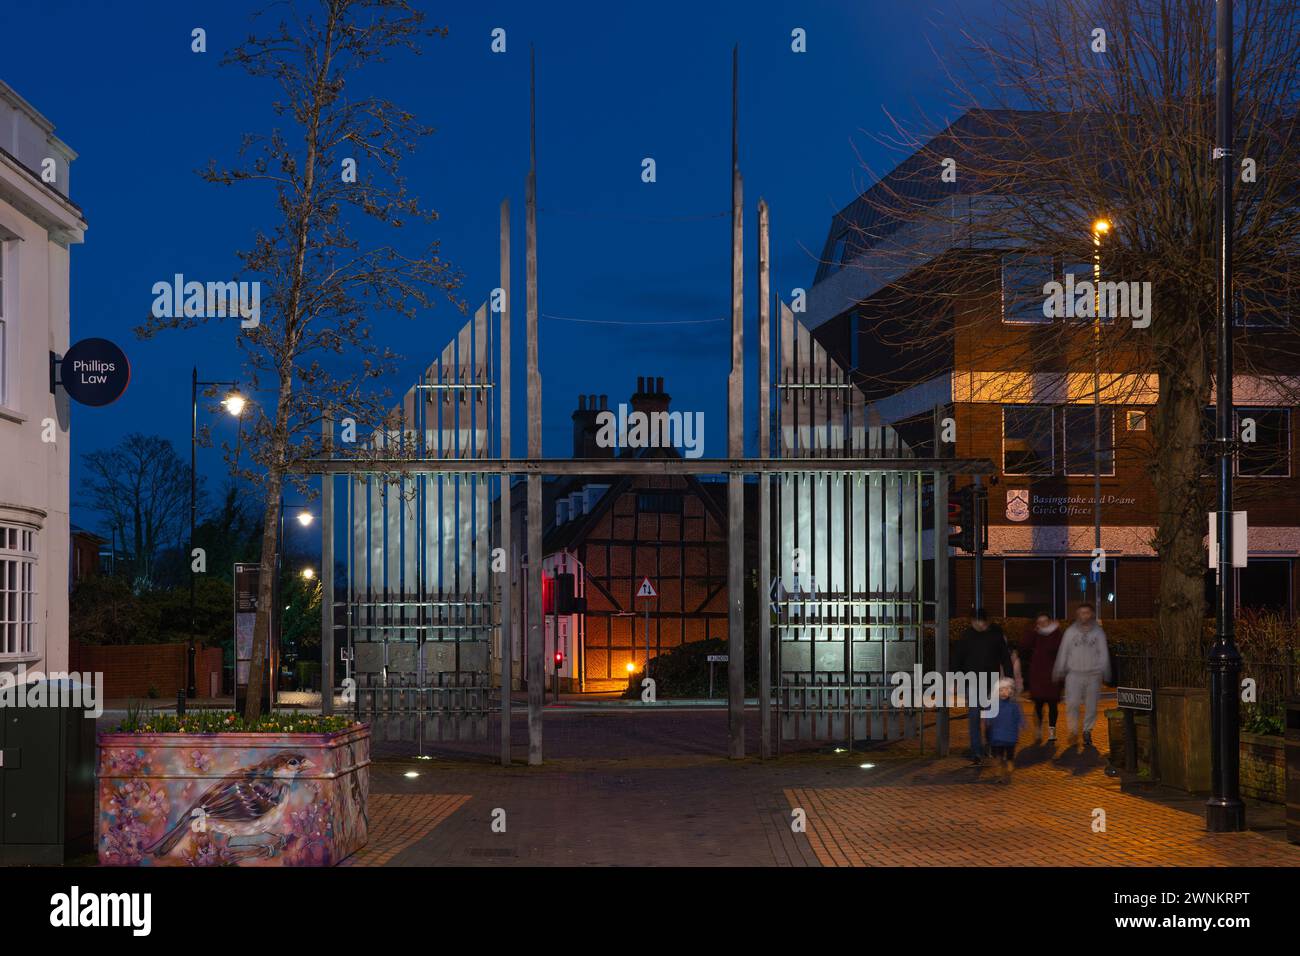 Les portes triomphales illuminées dans la soirée à l'entrée du centre-ville de Basingstoke London Road - acier forgé peint en graphite noir. ROYAUME-UNI Banque D'Images